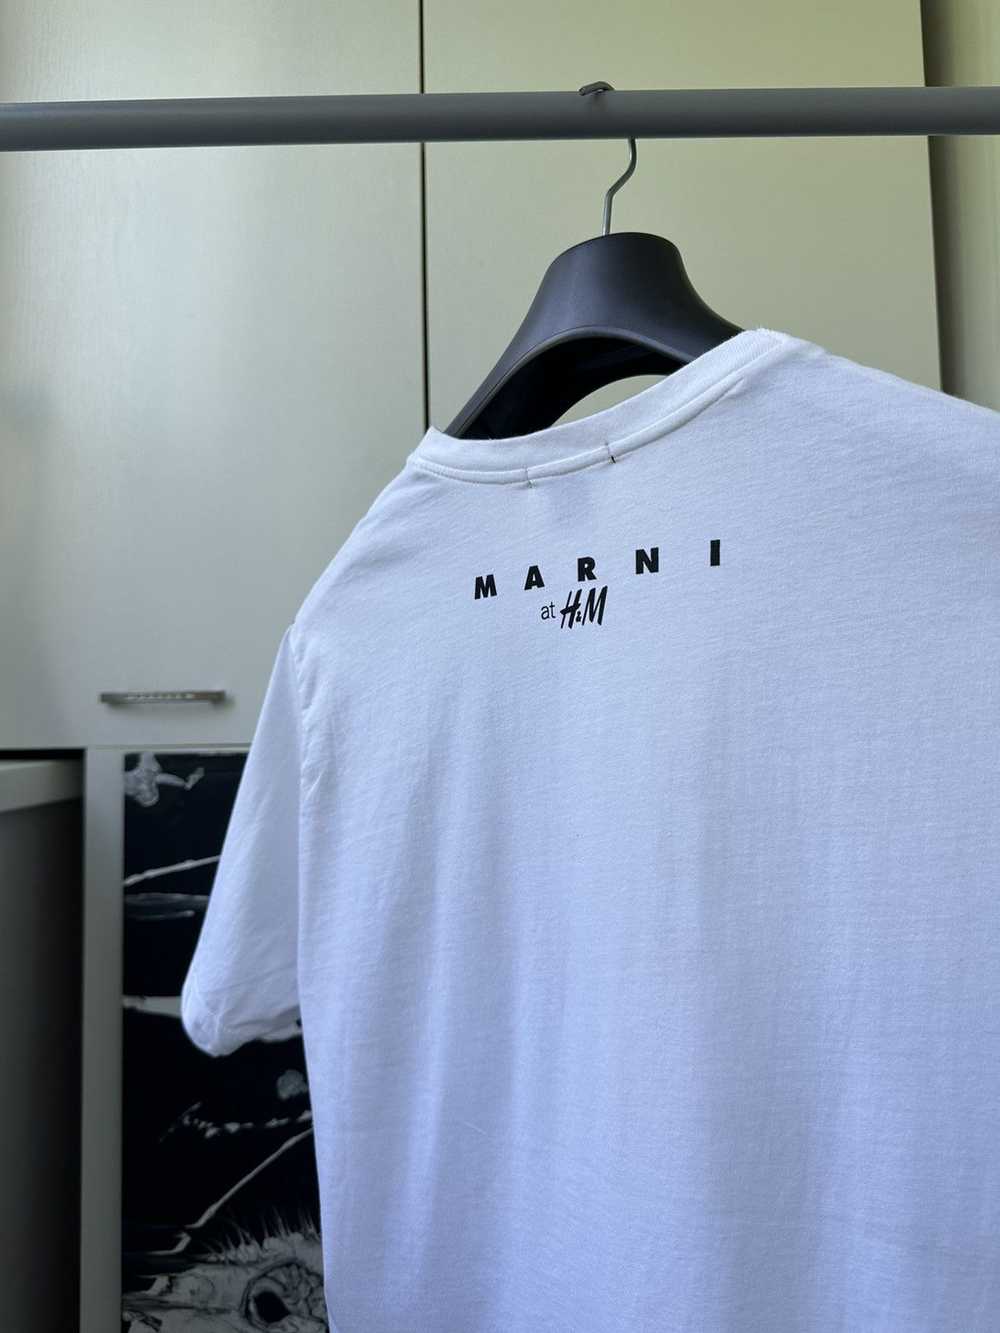 H&M × Marni Marni at H&M Polka Dot Tee - image 1